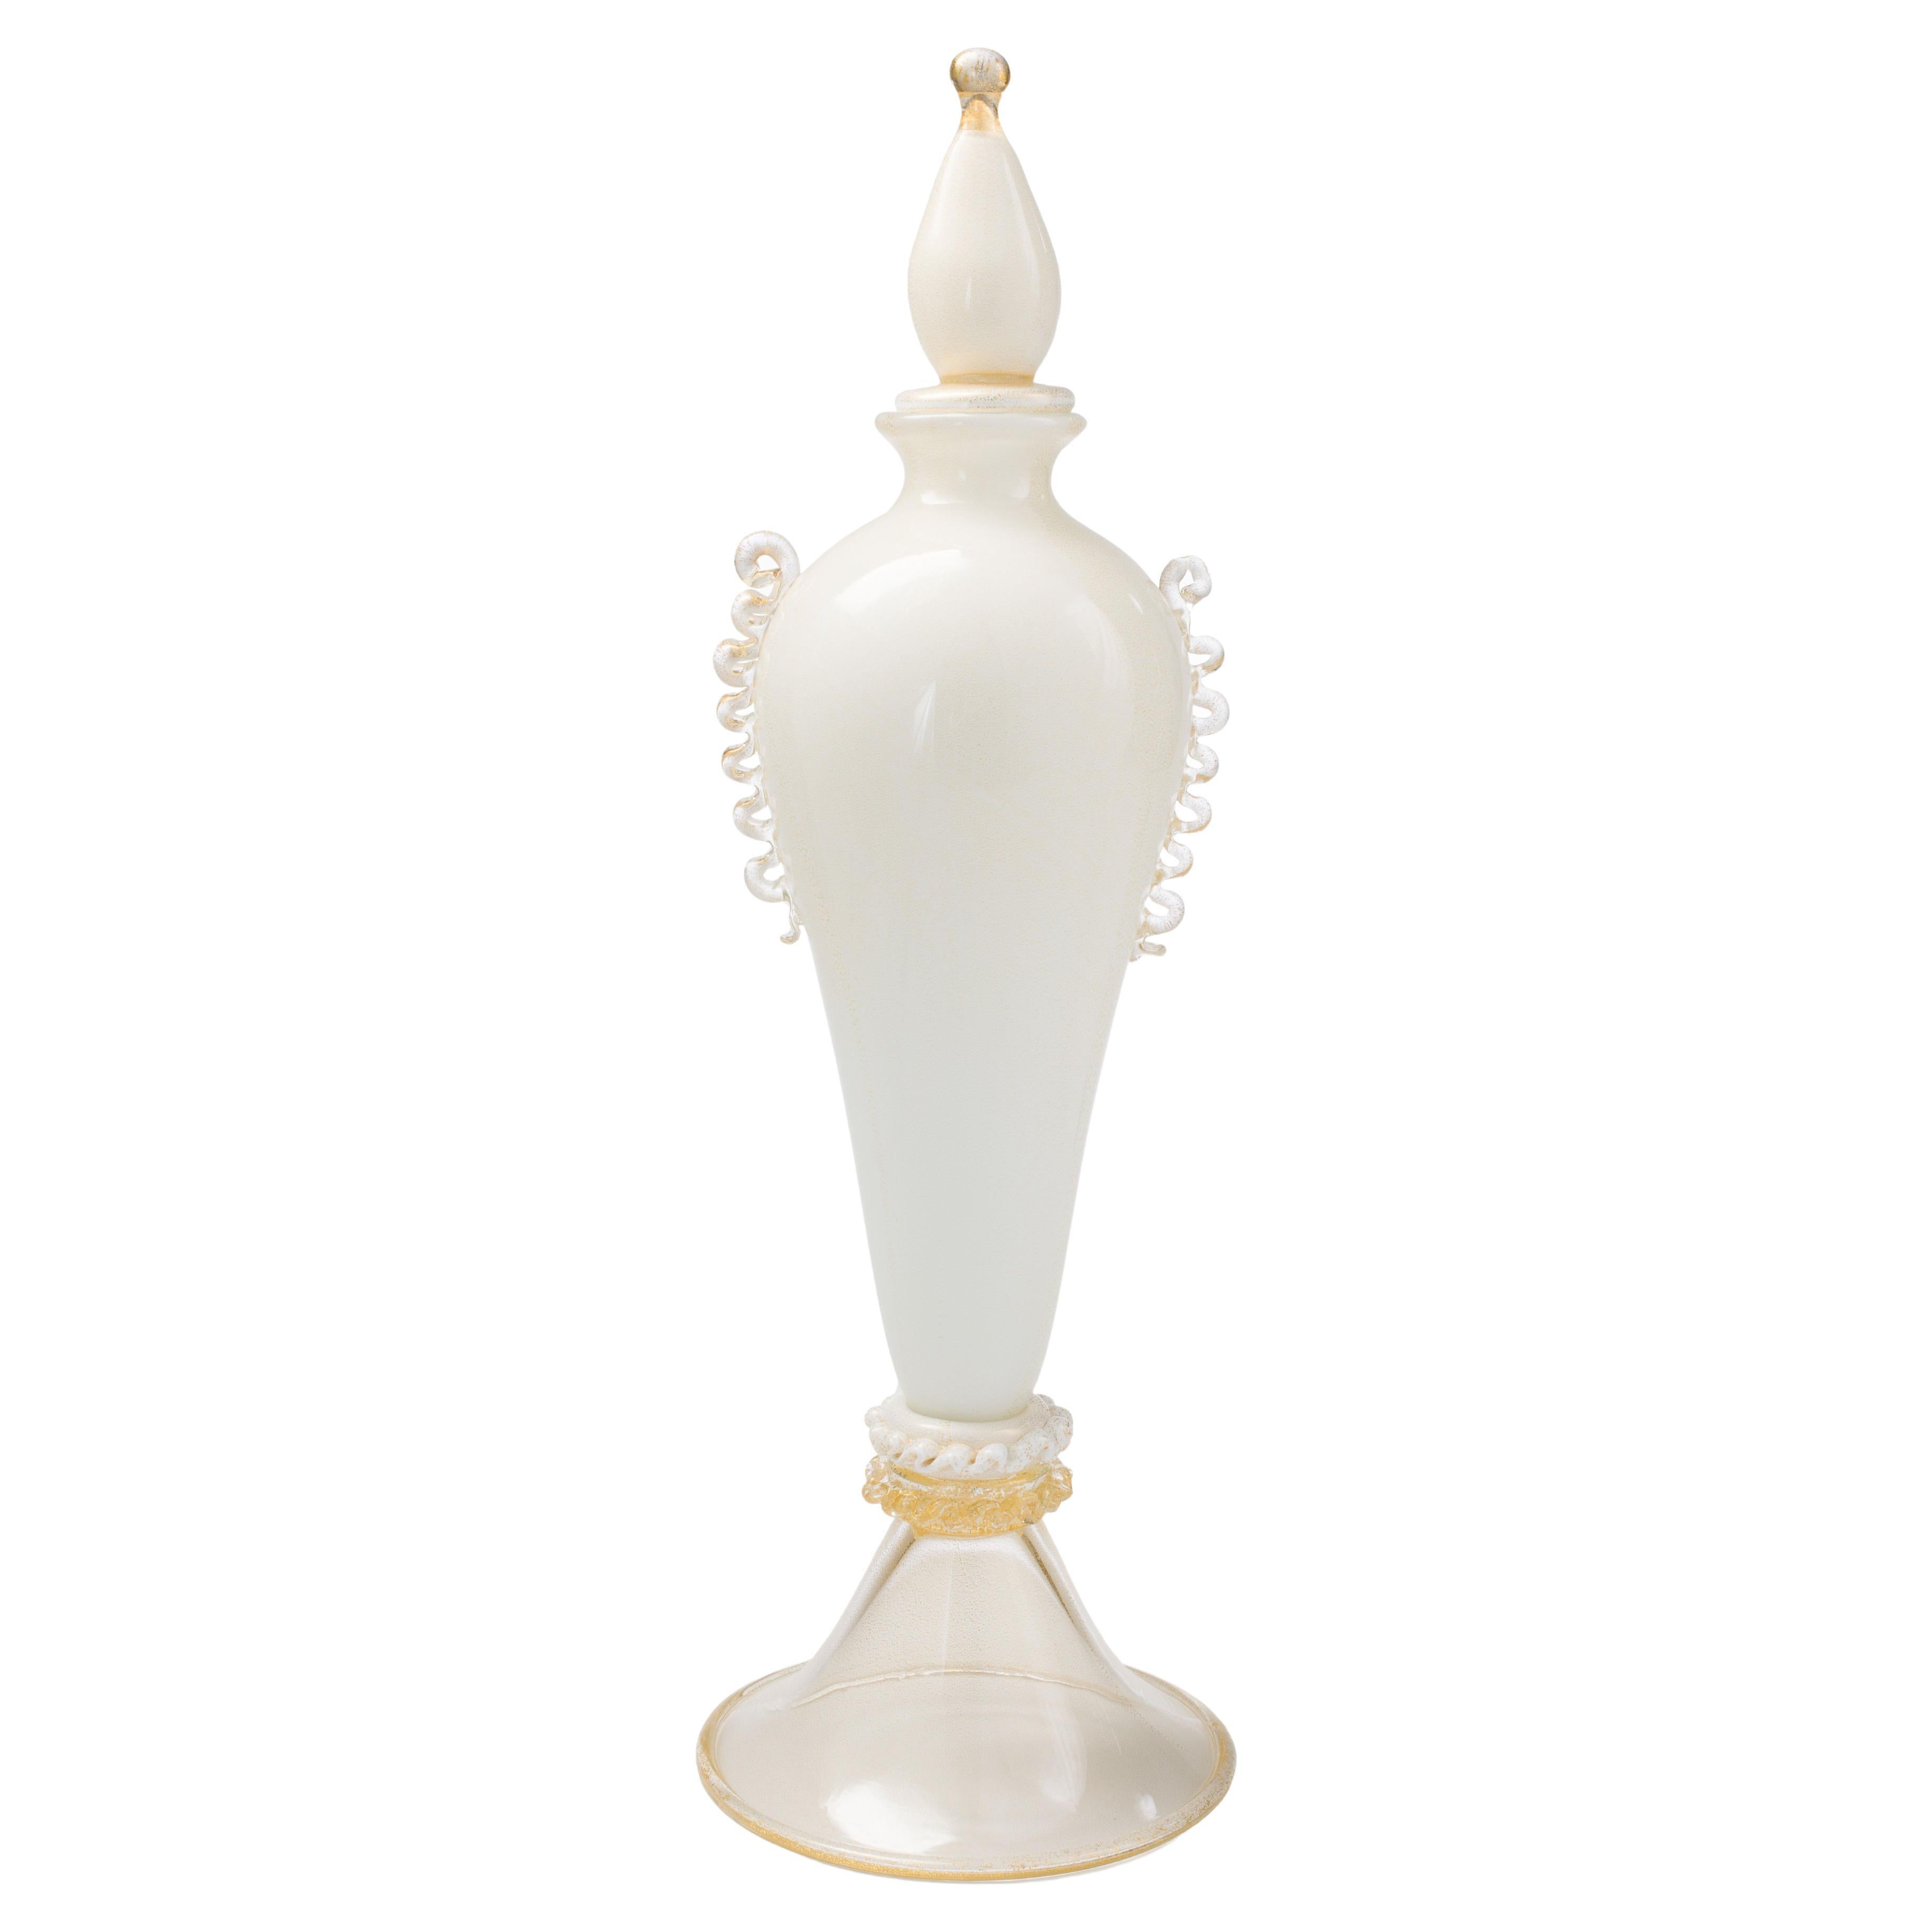 1295 Murano Hand Made Art Glass Lattimo Vase / Bottle For Sale